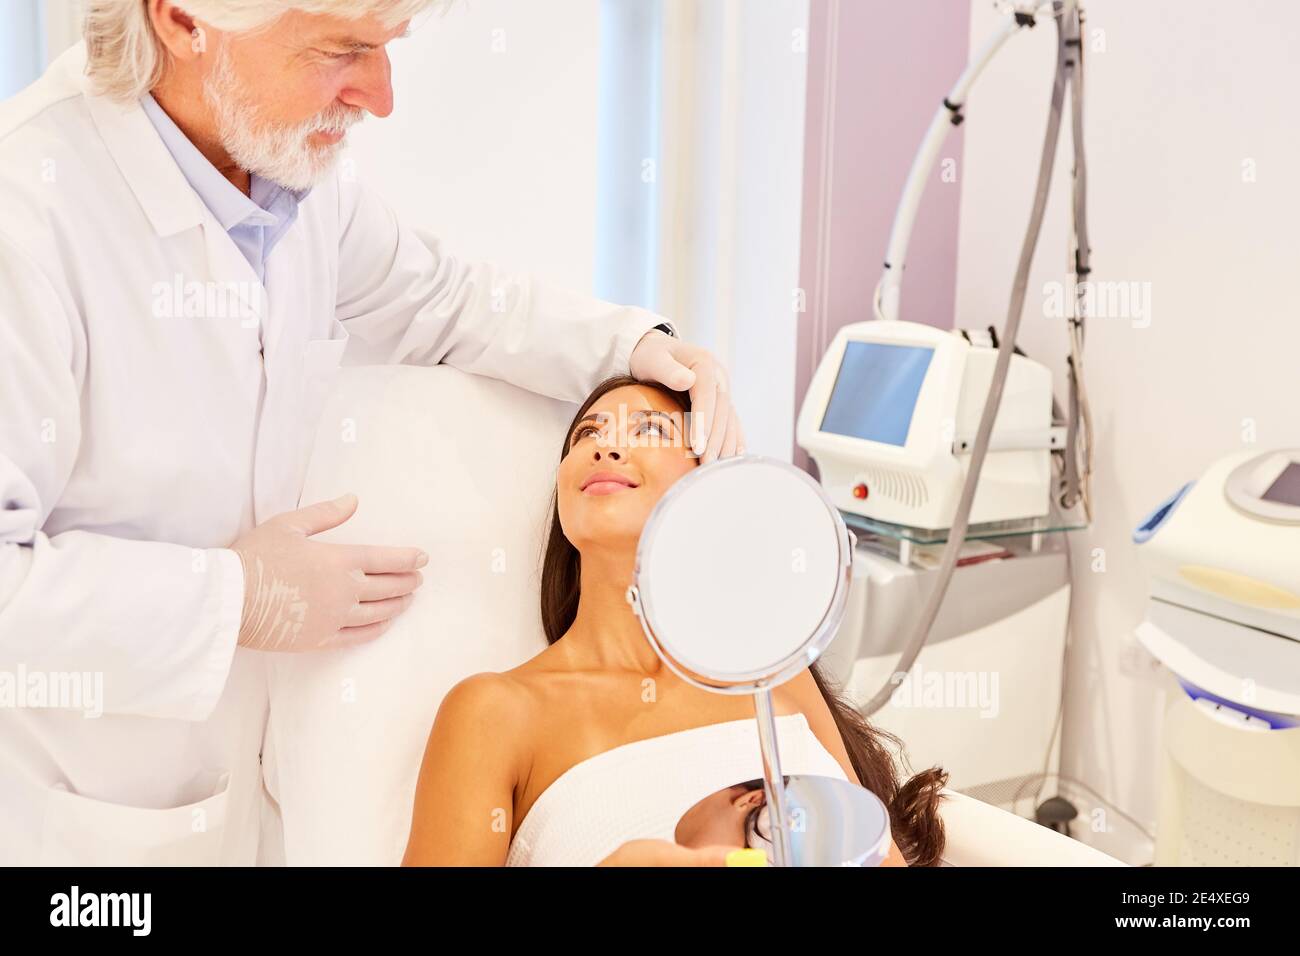 Dermatologue en tant que chirurgien cosmétique conseillant un patient avant un cosmétique fonctionnement Banque D'Images